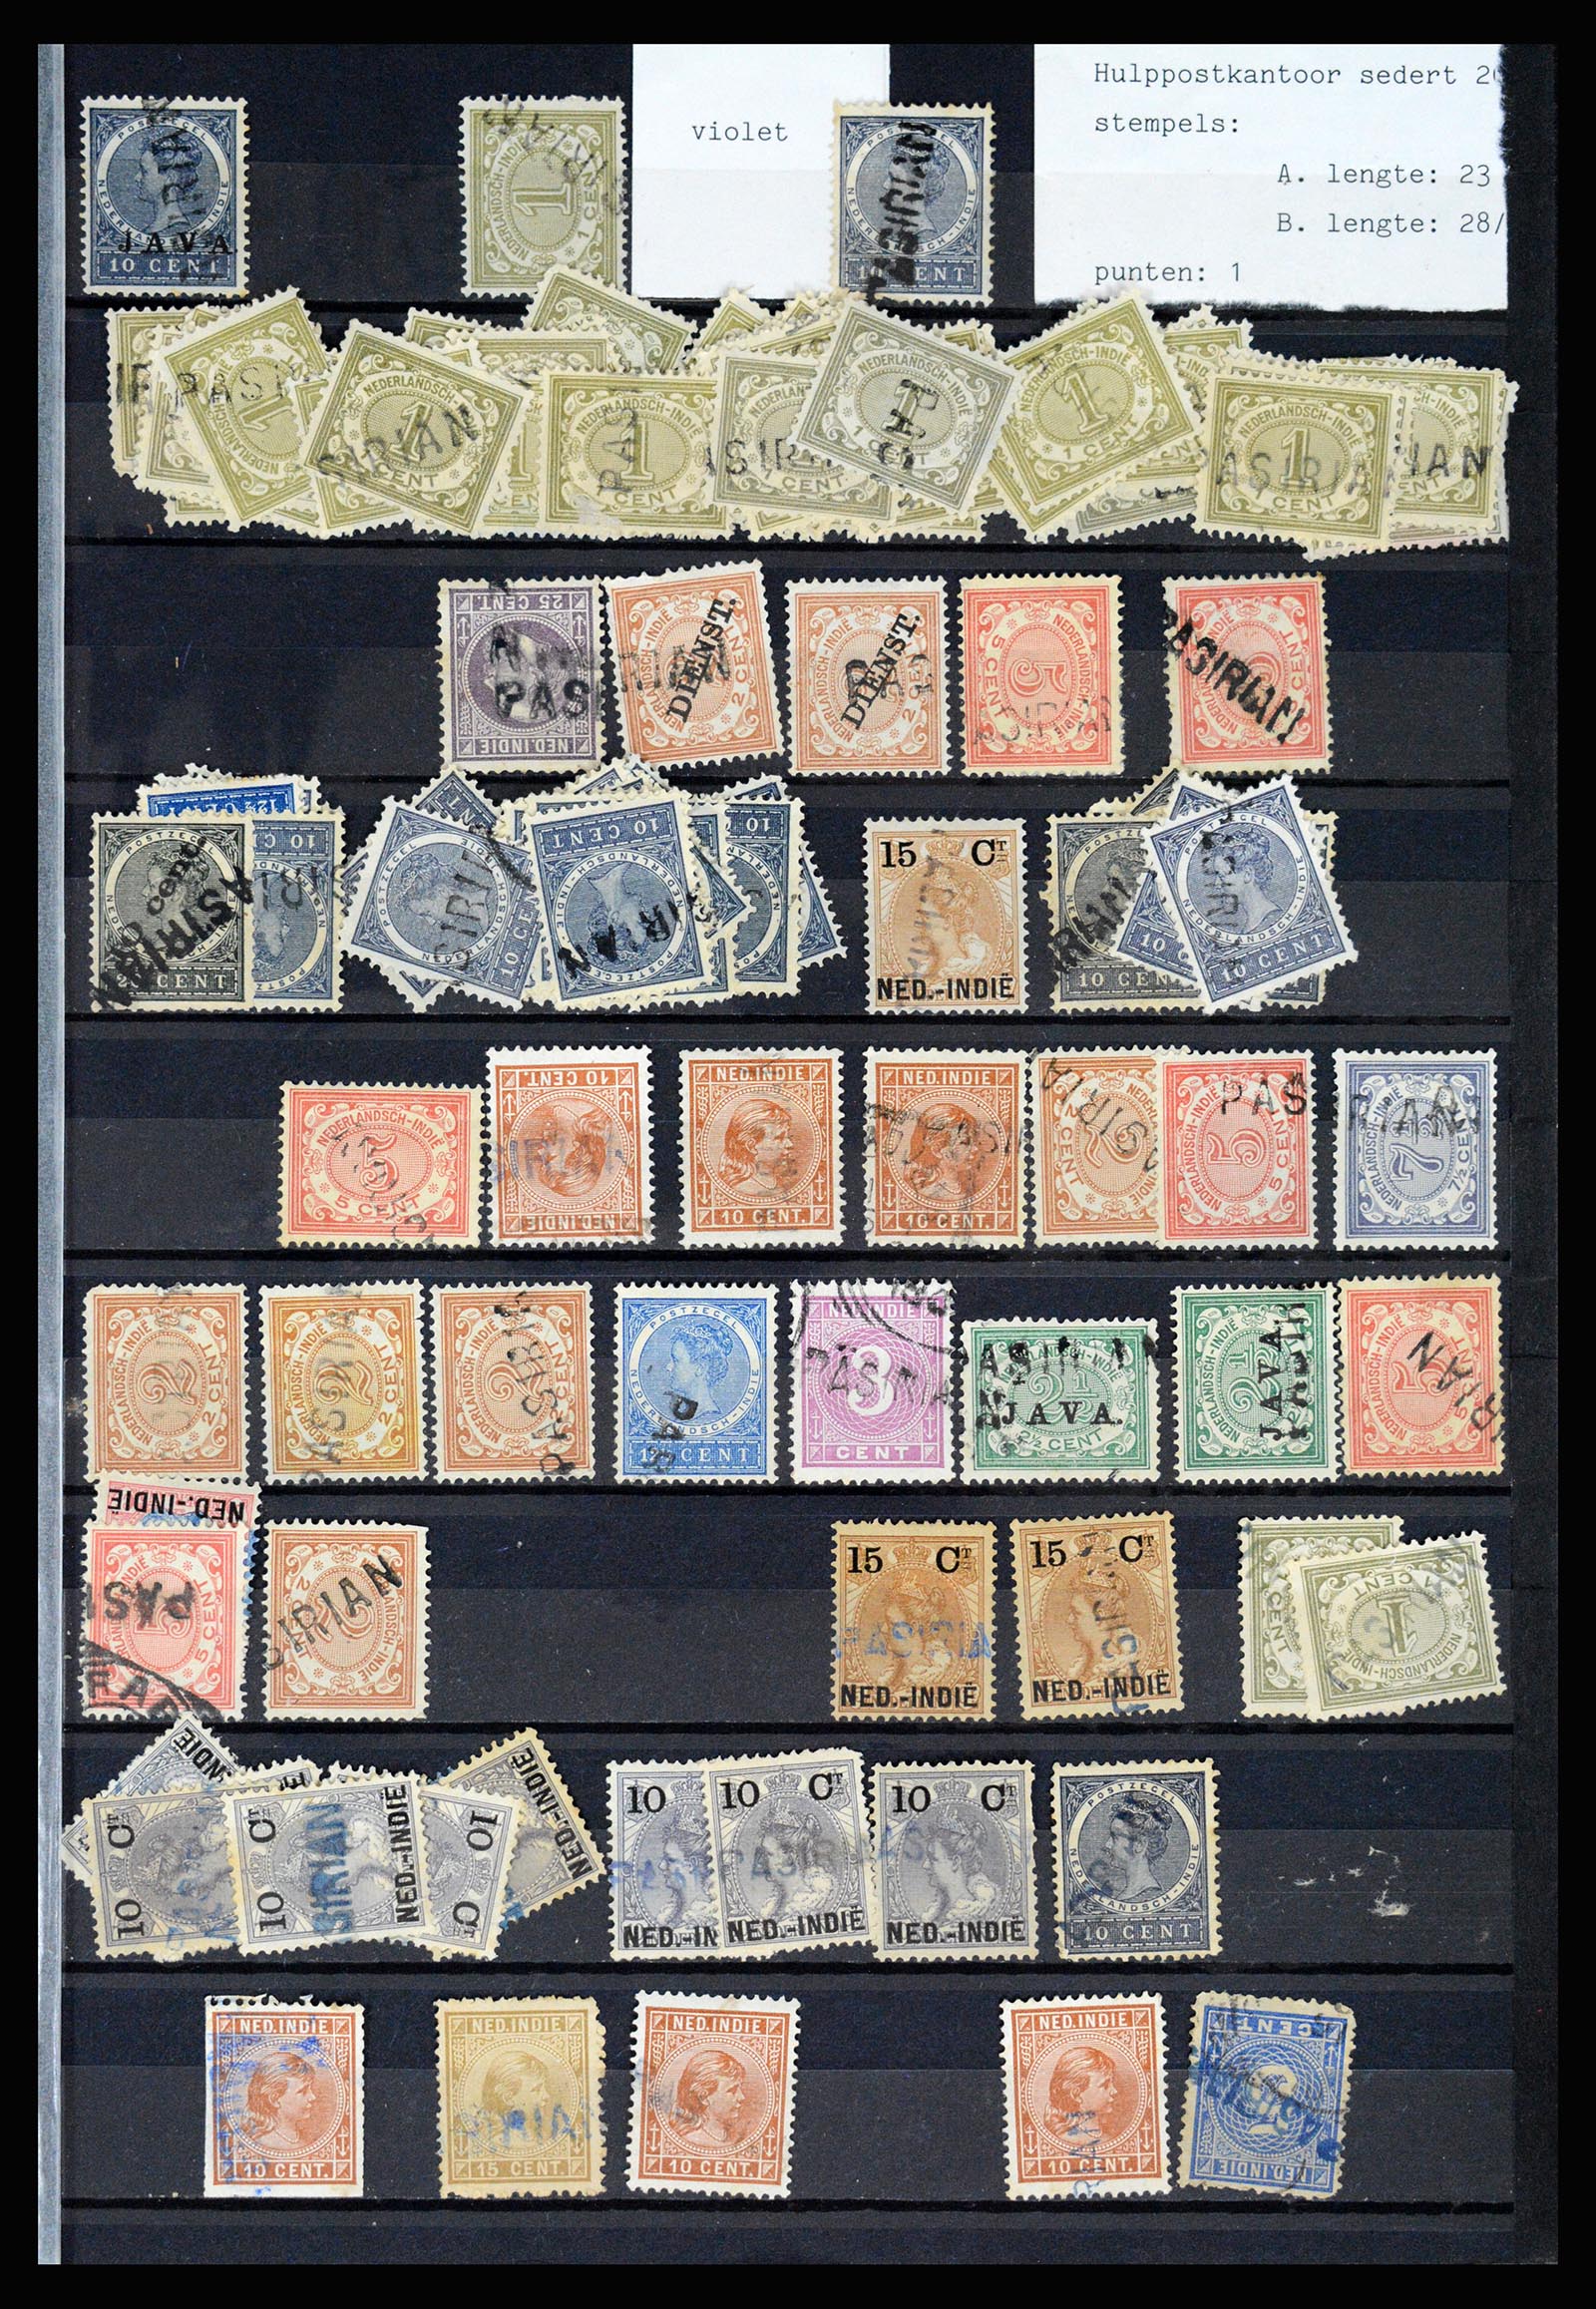 36512 055 - Stamp collection 36512 Nederlands Indië stempels 1872-1930.